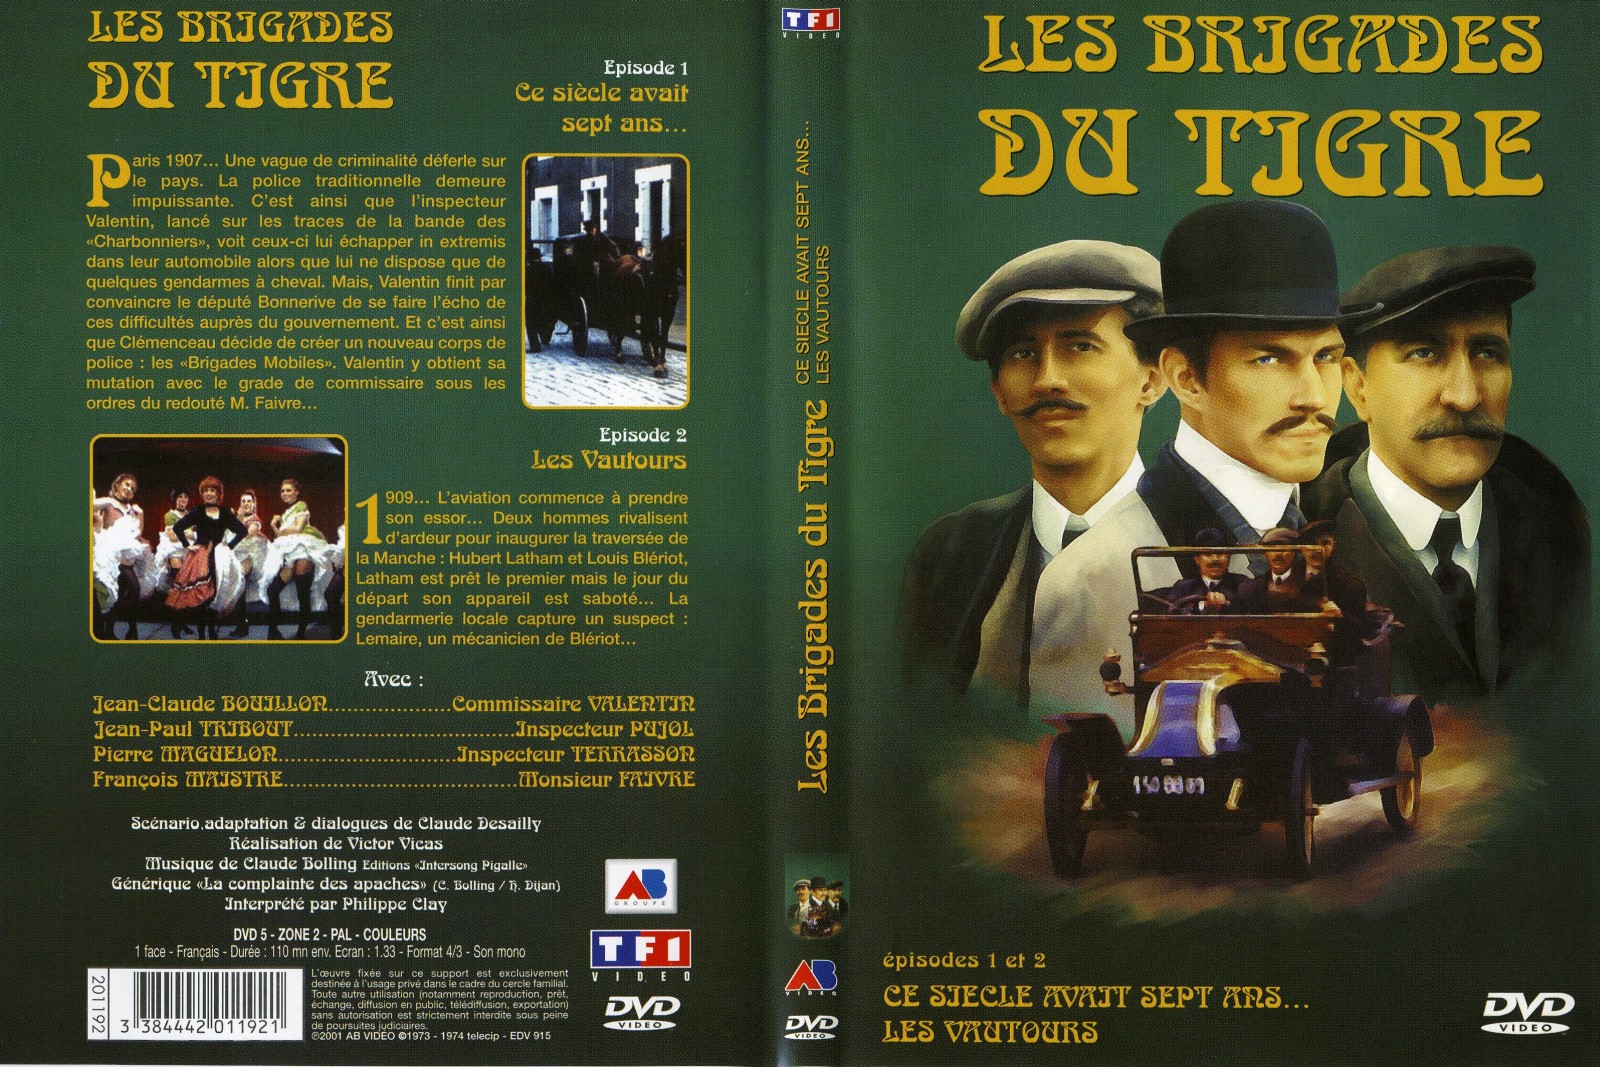 Jaquette DVD Les brigades du tigre vol 1